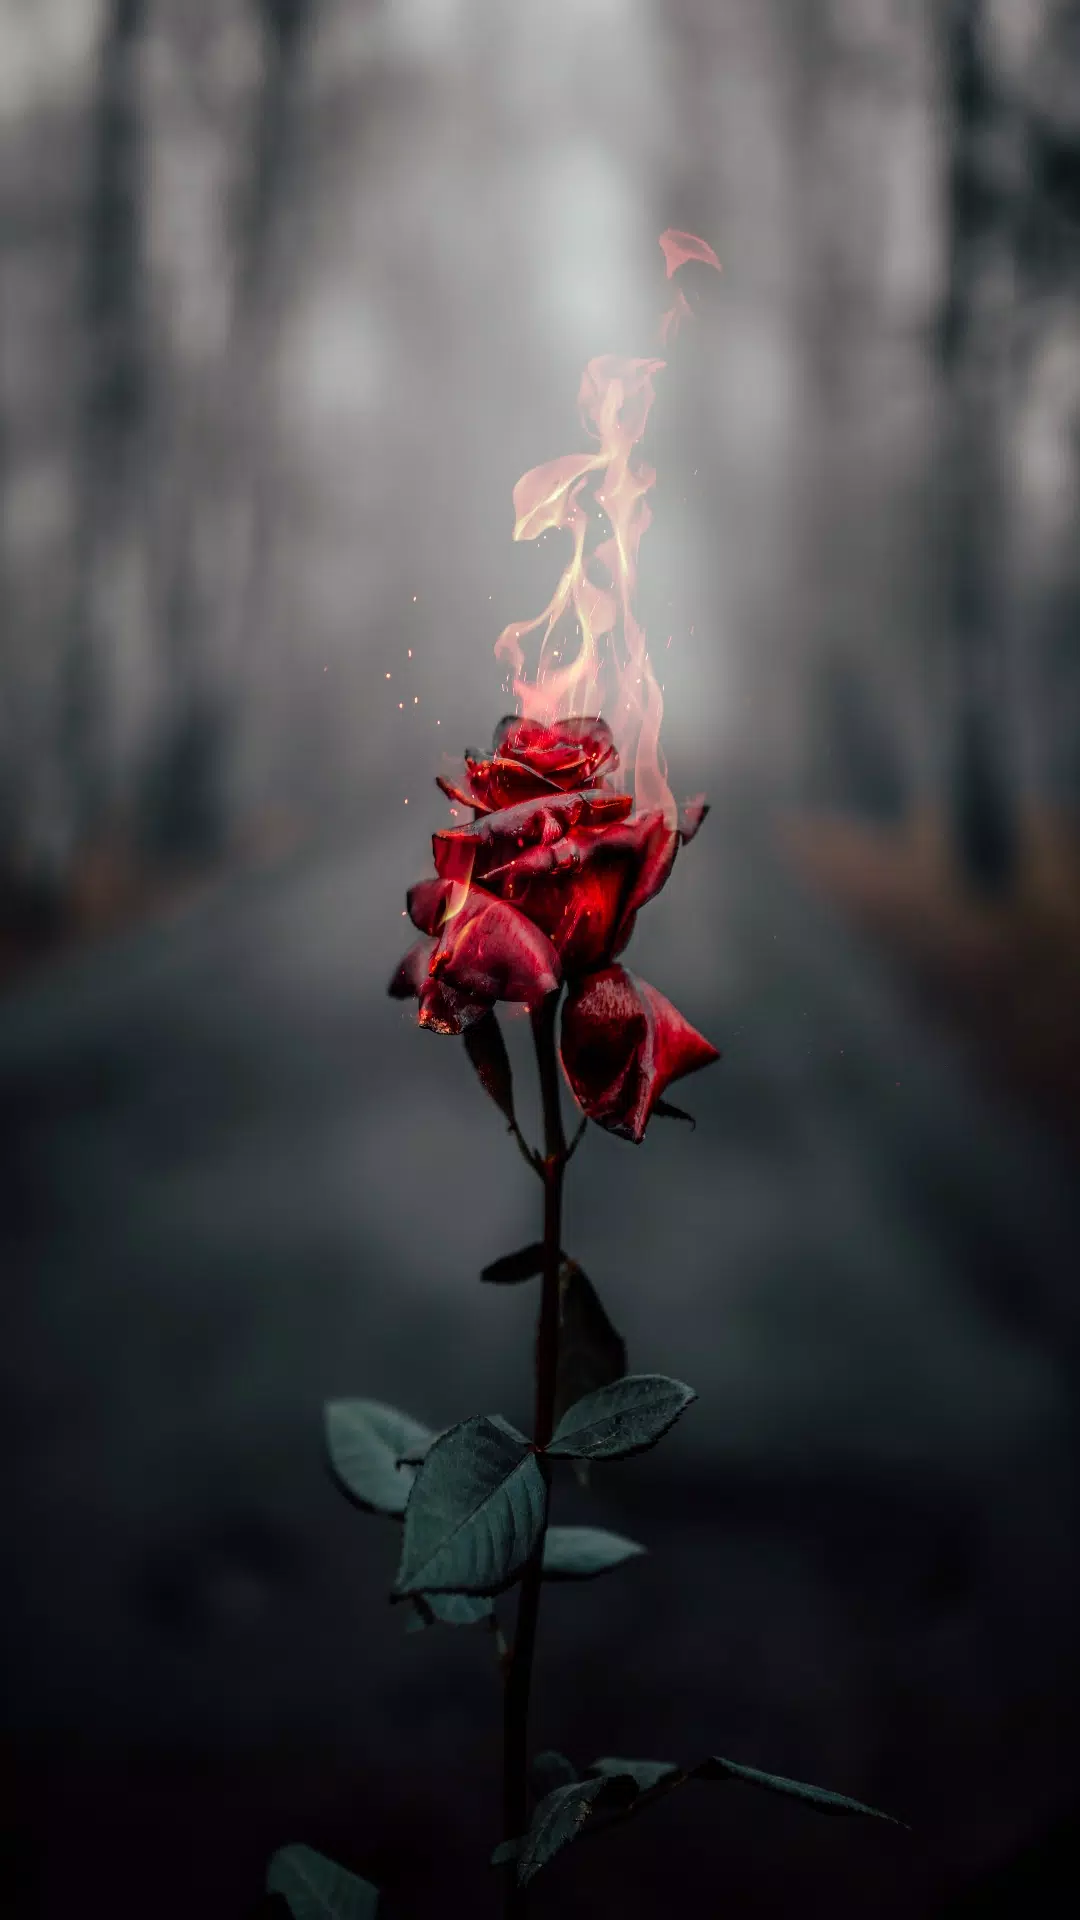  Rote Rosen Hintergrundbild 1080x1920. Rose wallpaper hd- Rose flower APK für Android herunterladen